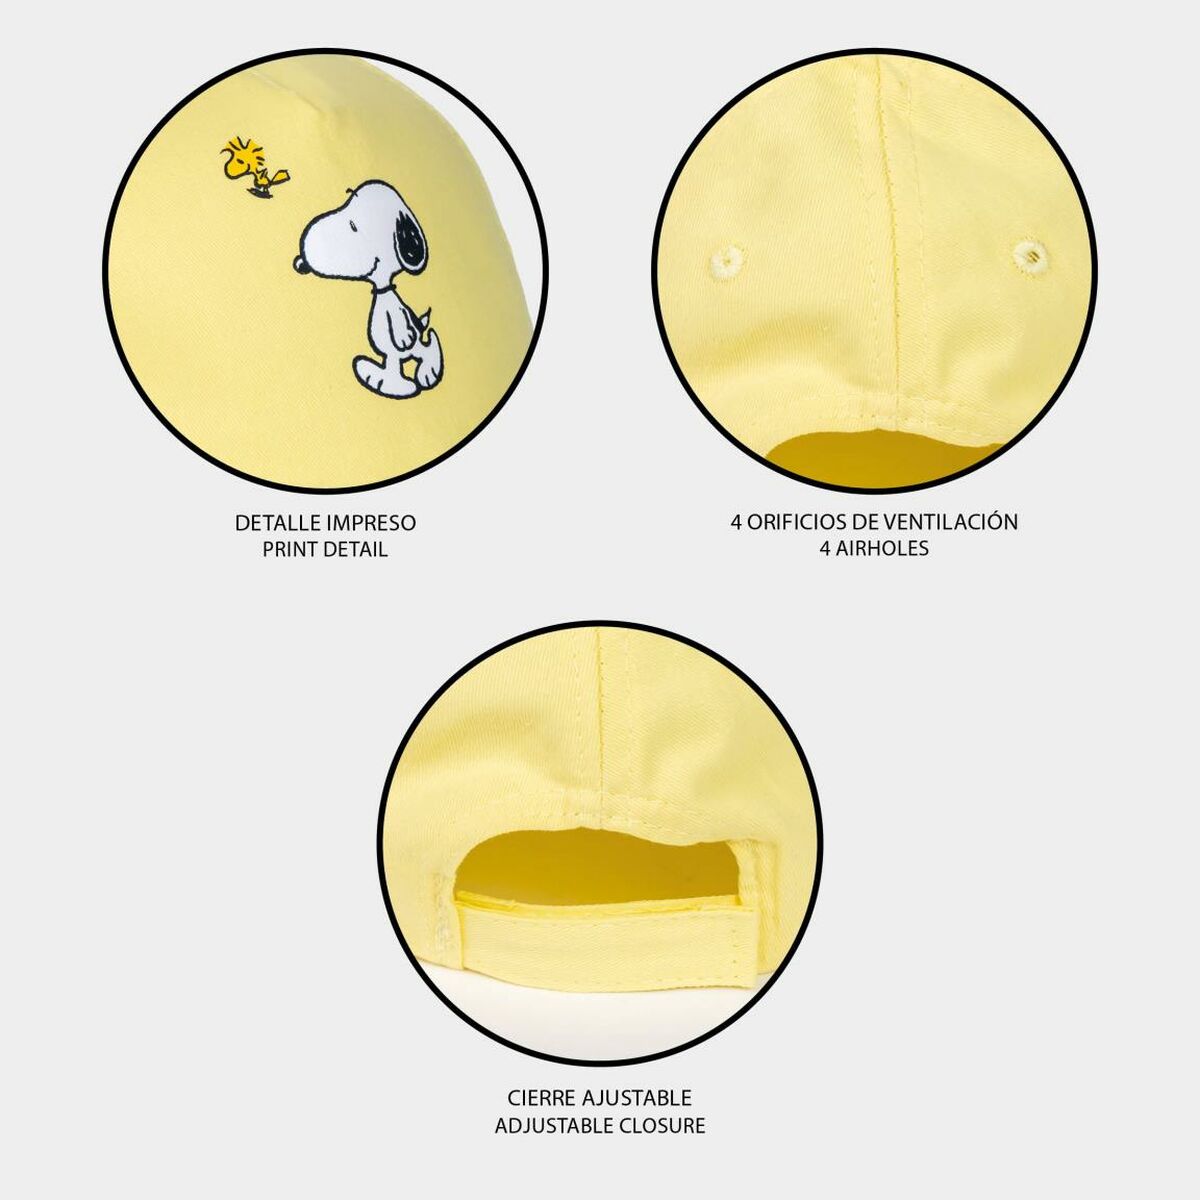 Cappellino per Bambini Snoopy Giallo (54 cm)